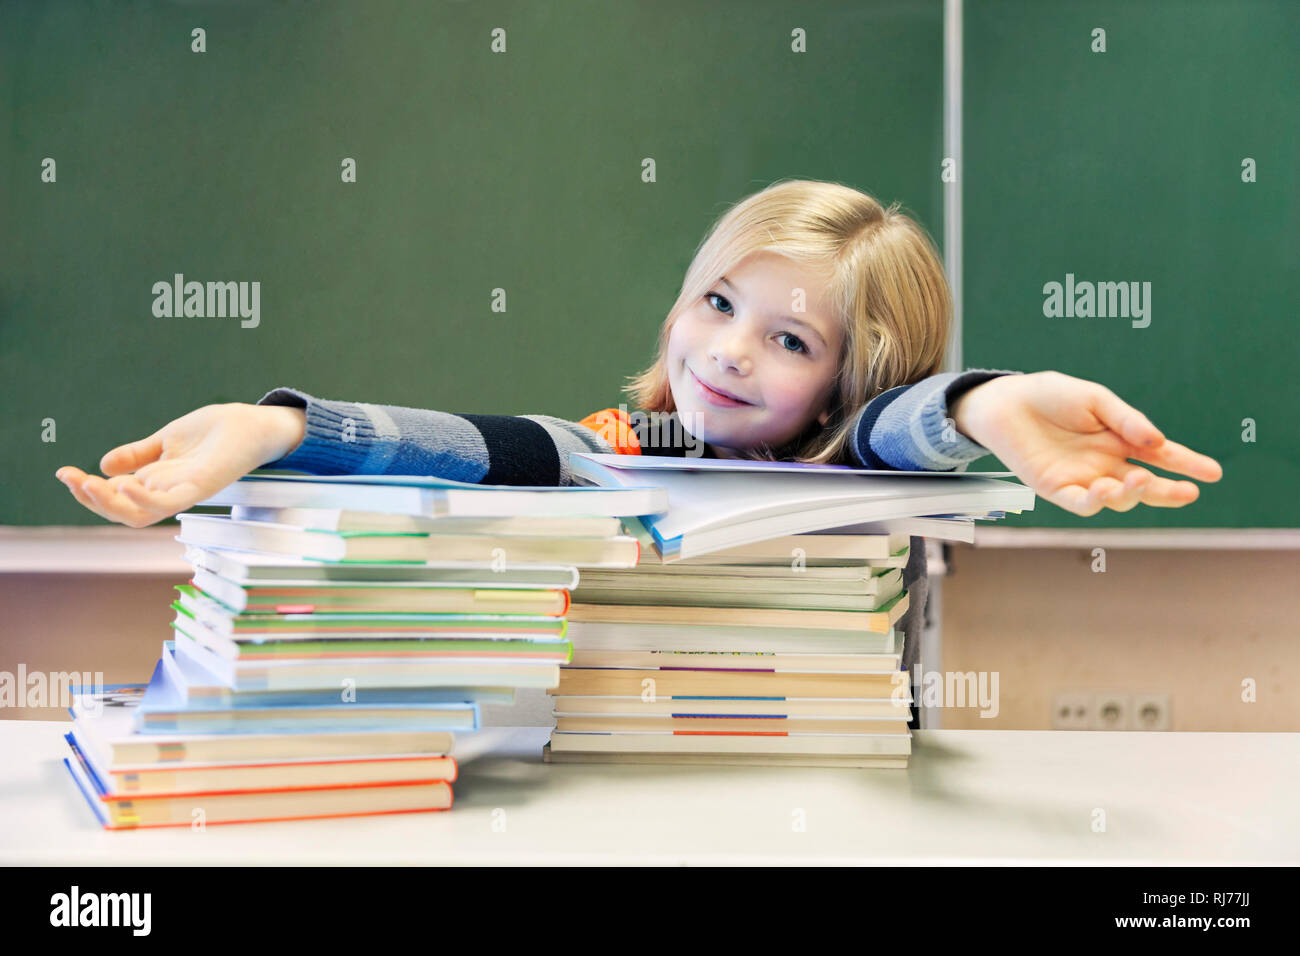 Schülerin, 9 Jahre alt, vor zwei Stapeln Bücher vor einer Tafel Stock Photo